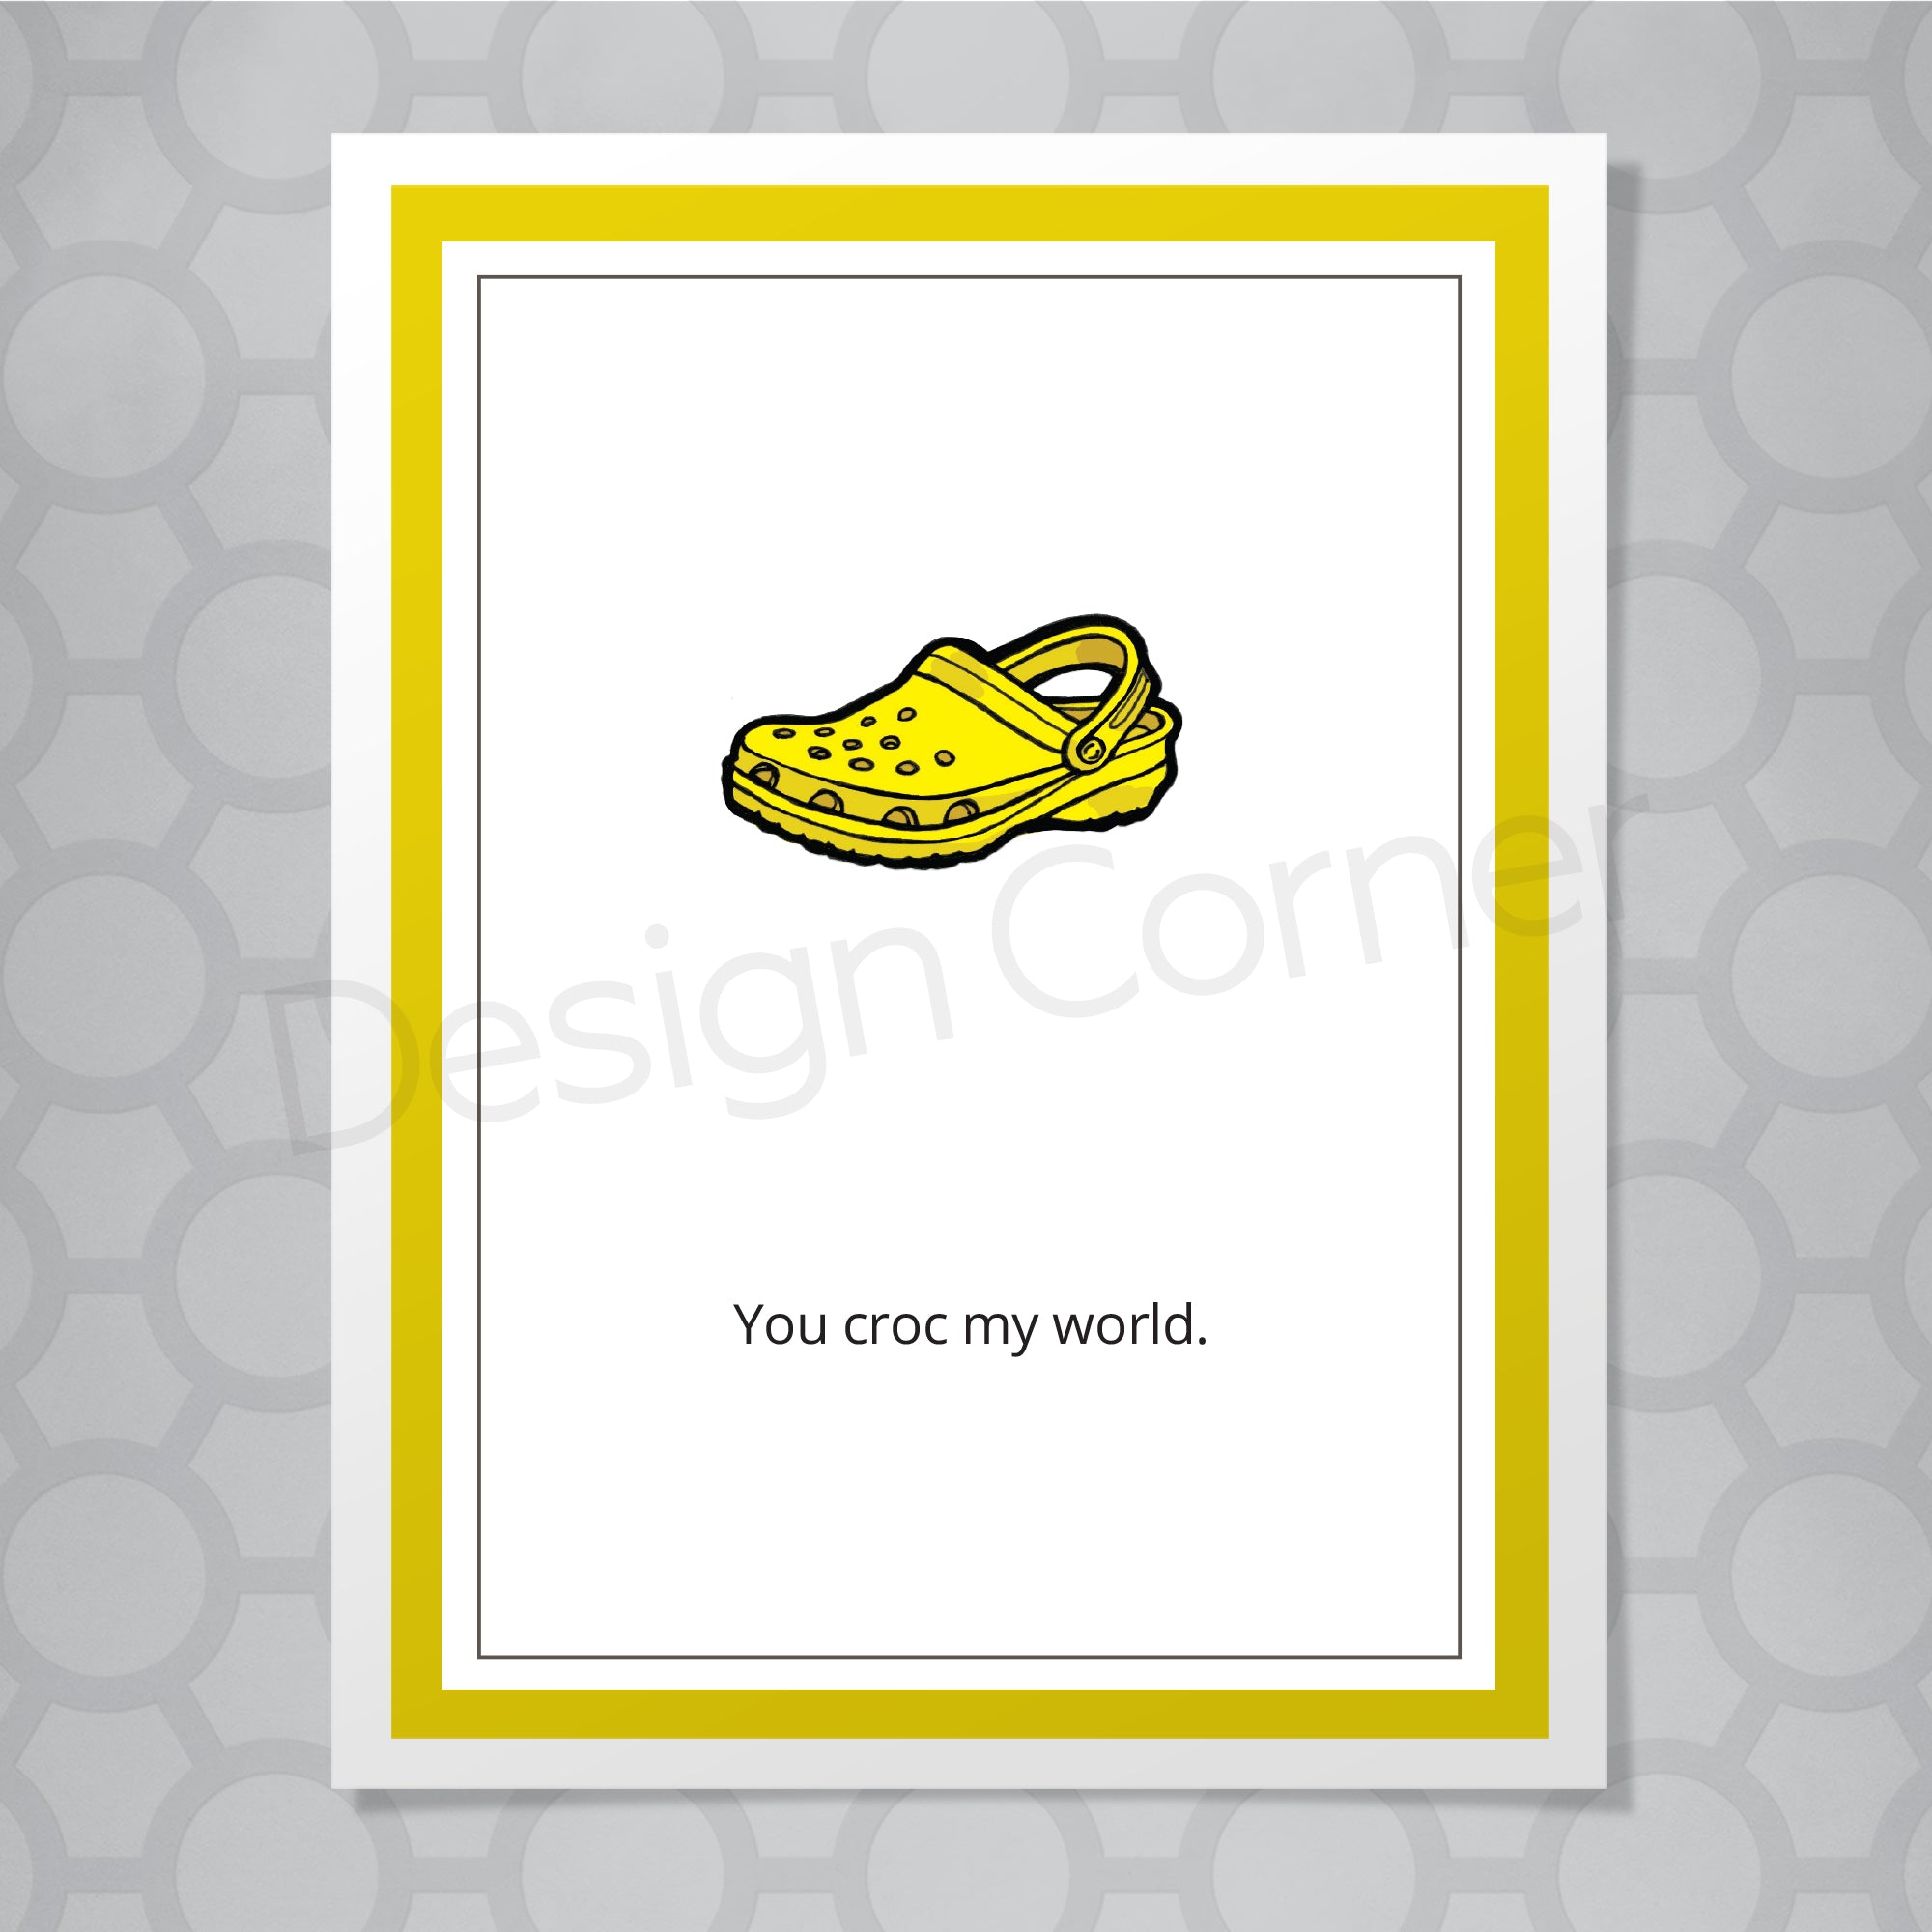 Croc my world Love Card